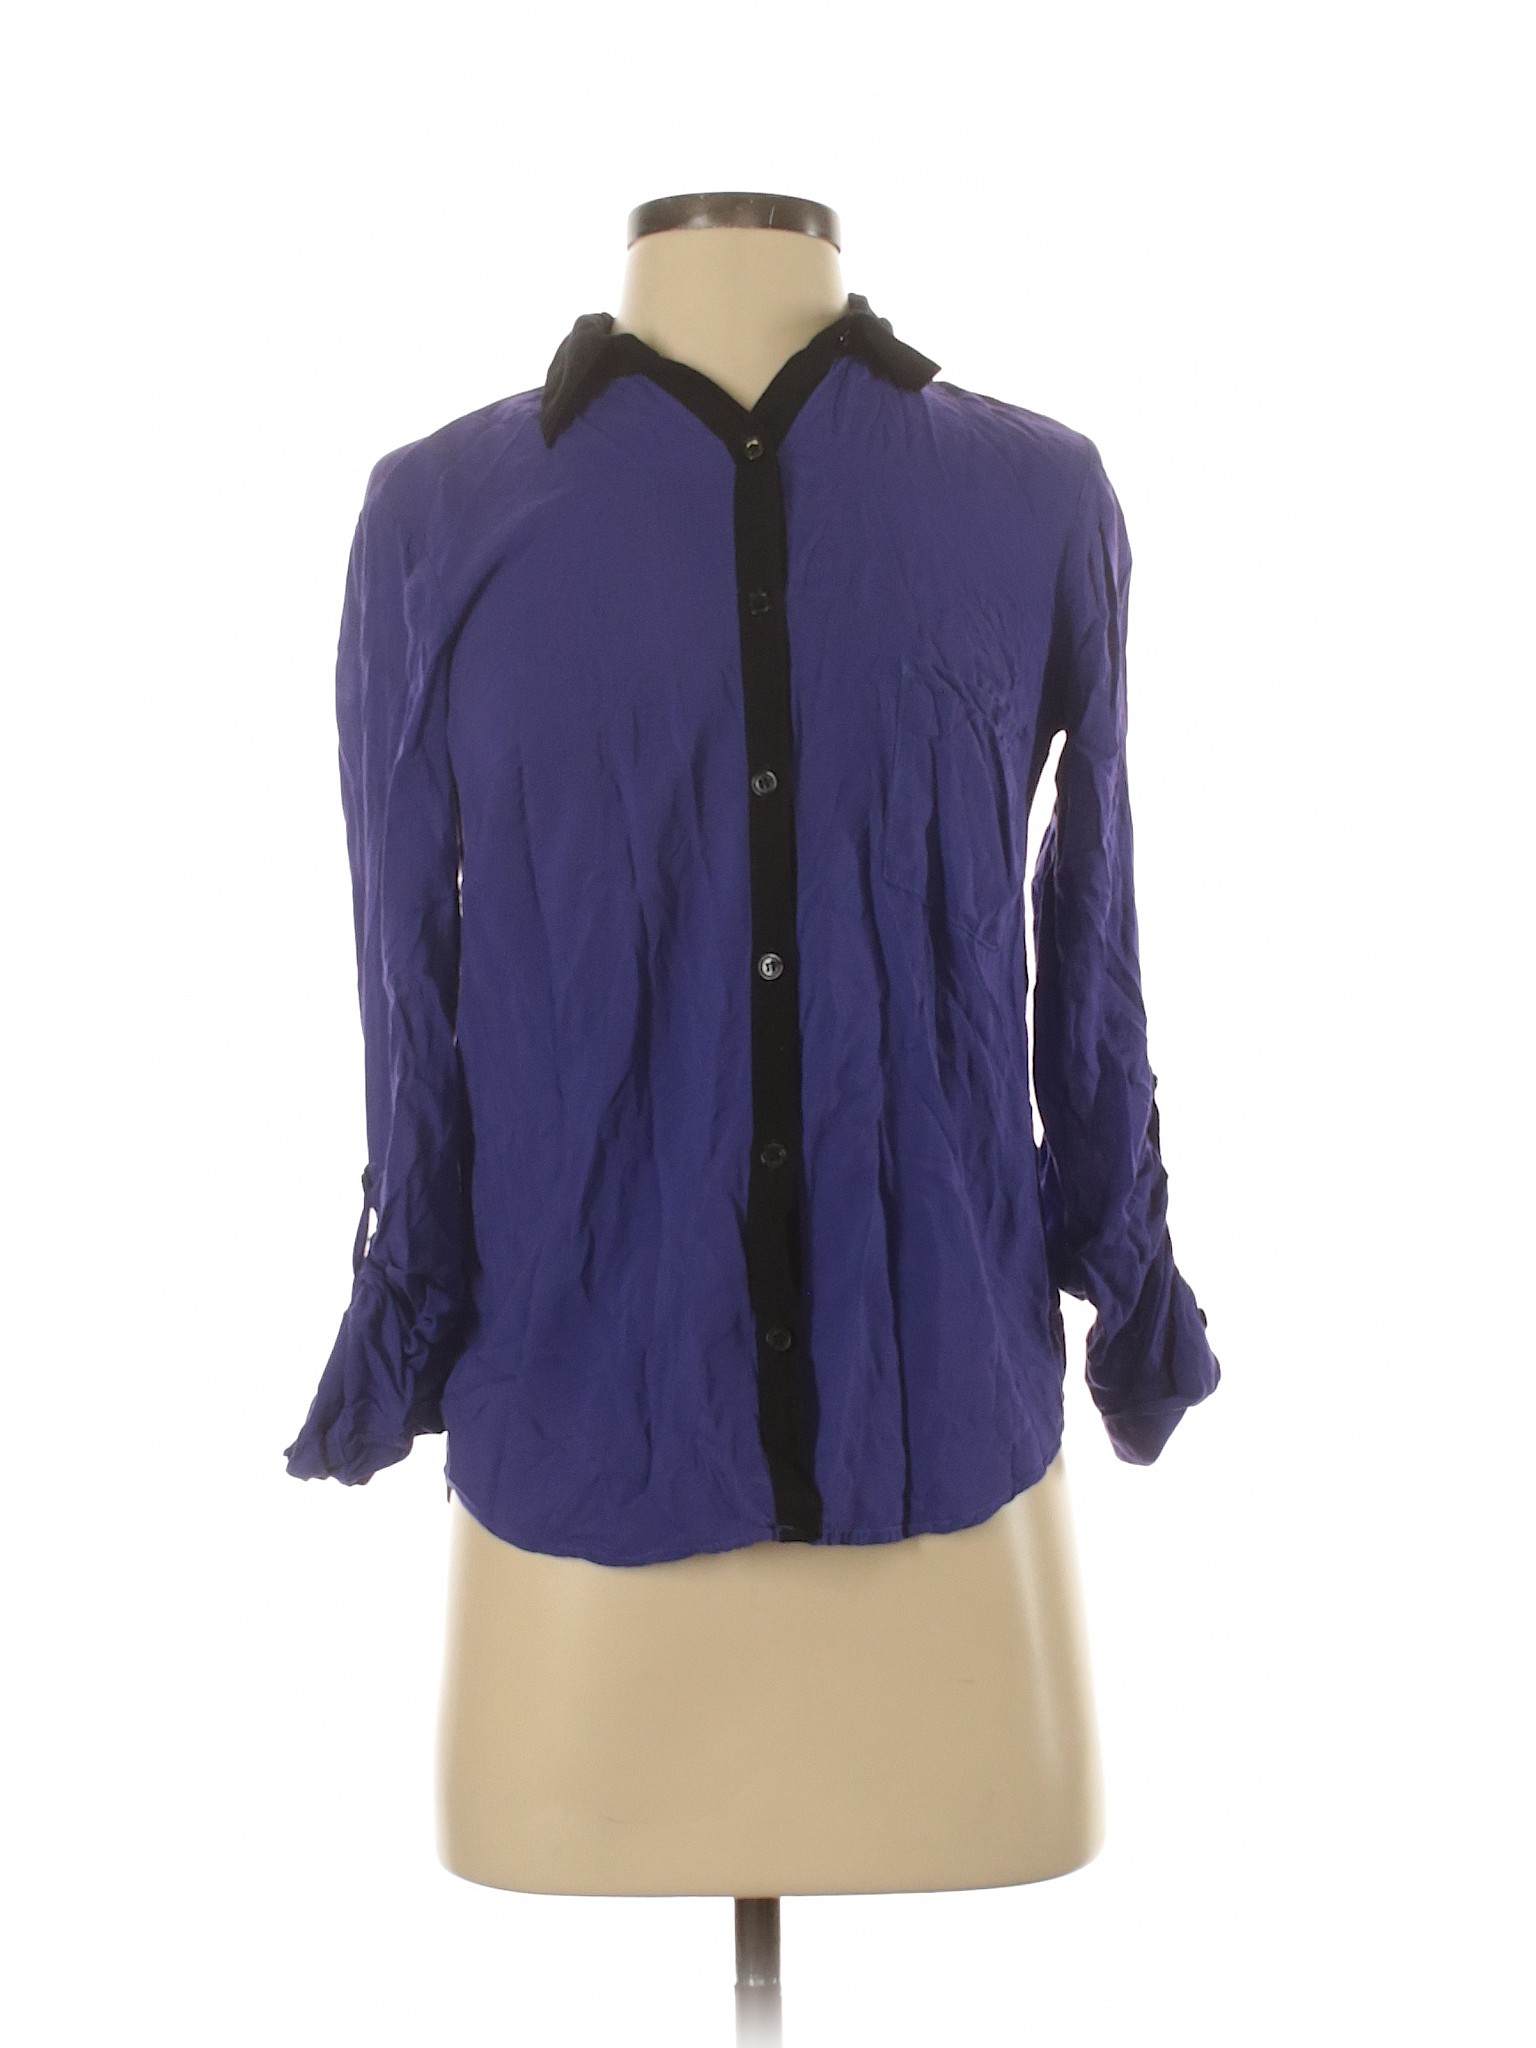 Splendid Women Purple Long Sleeve Blouse XS | eBay